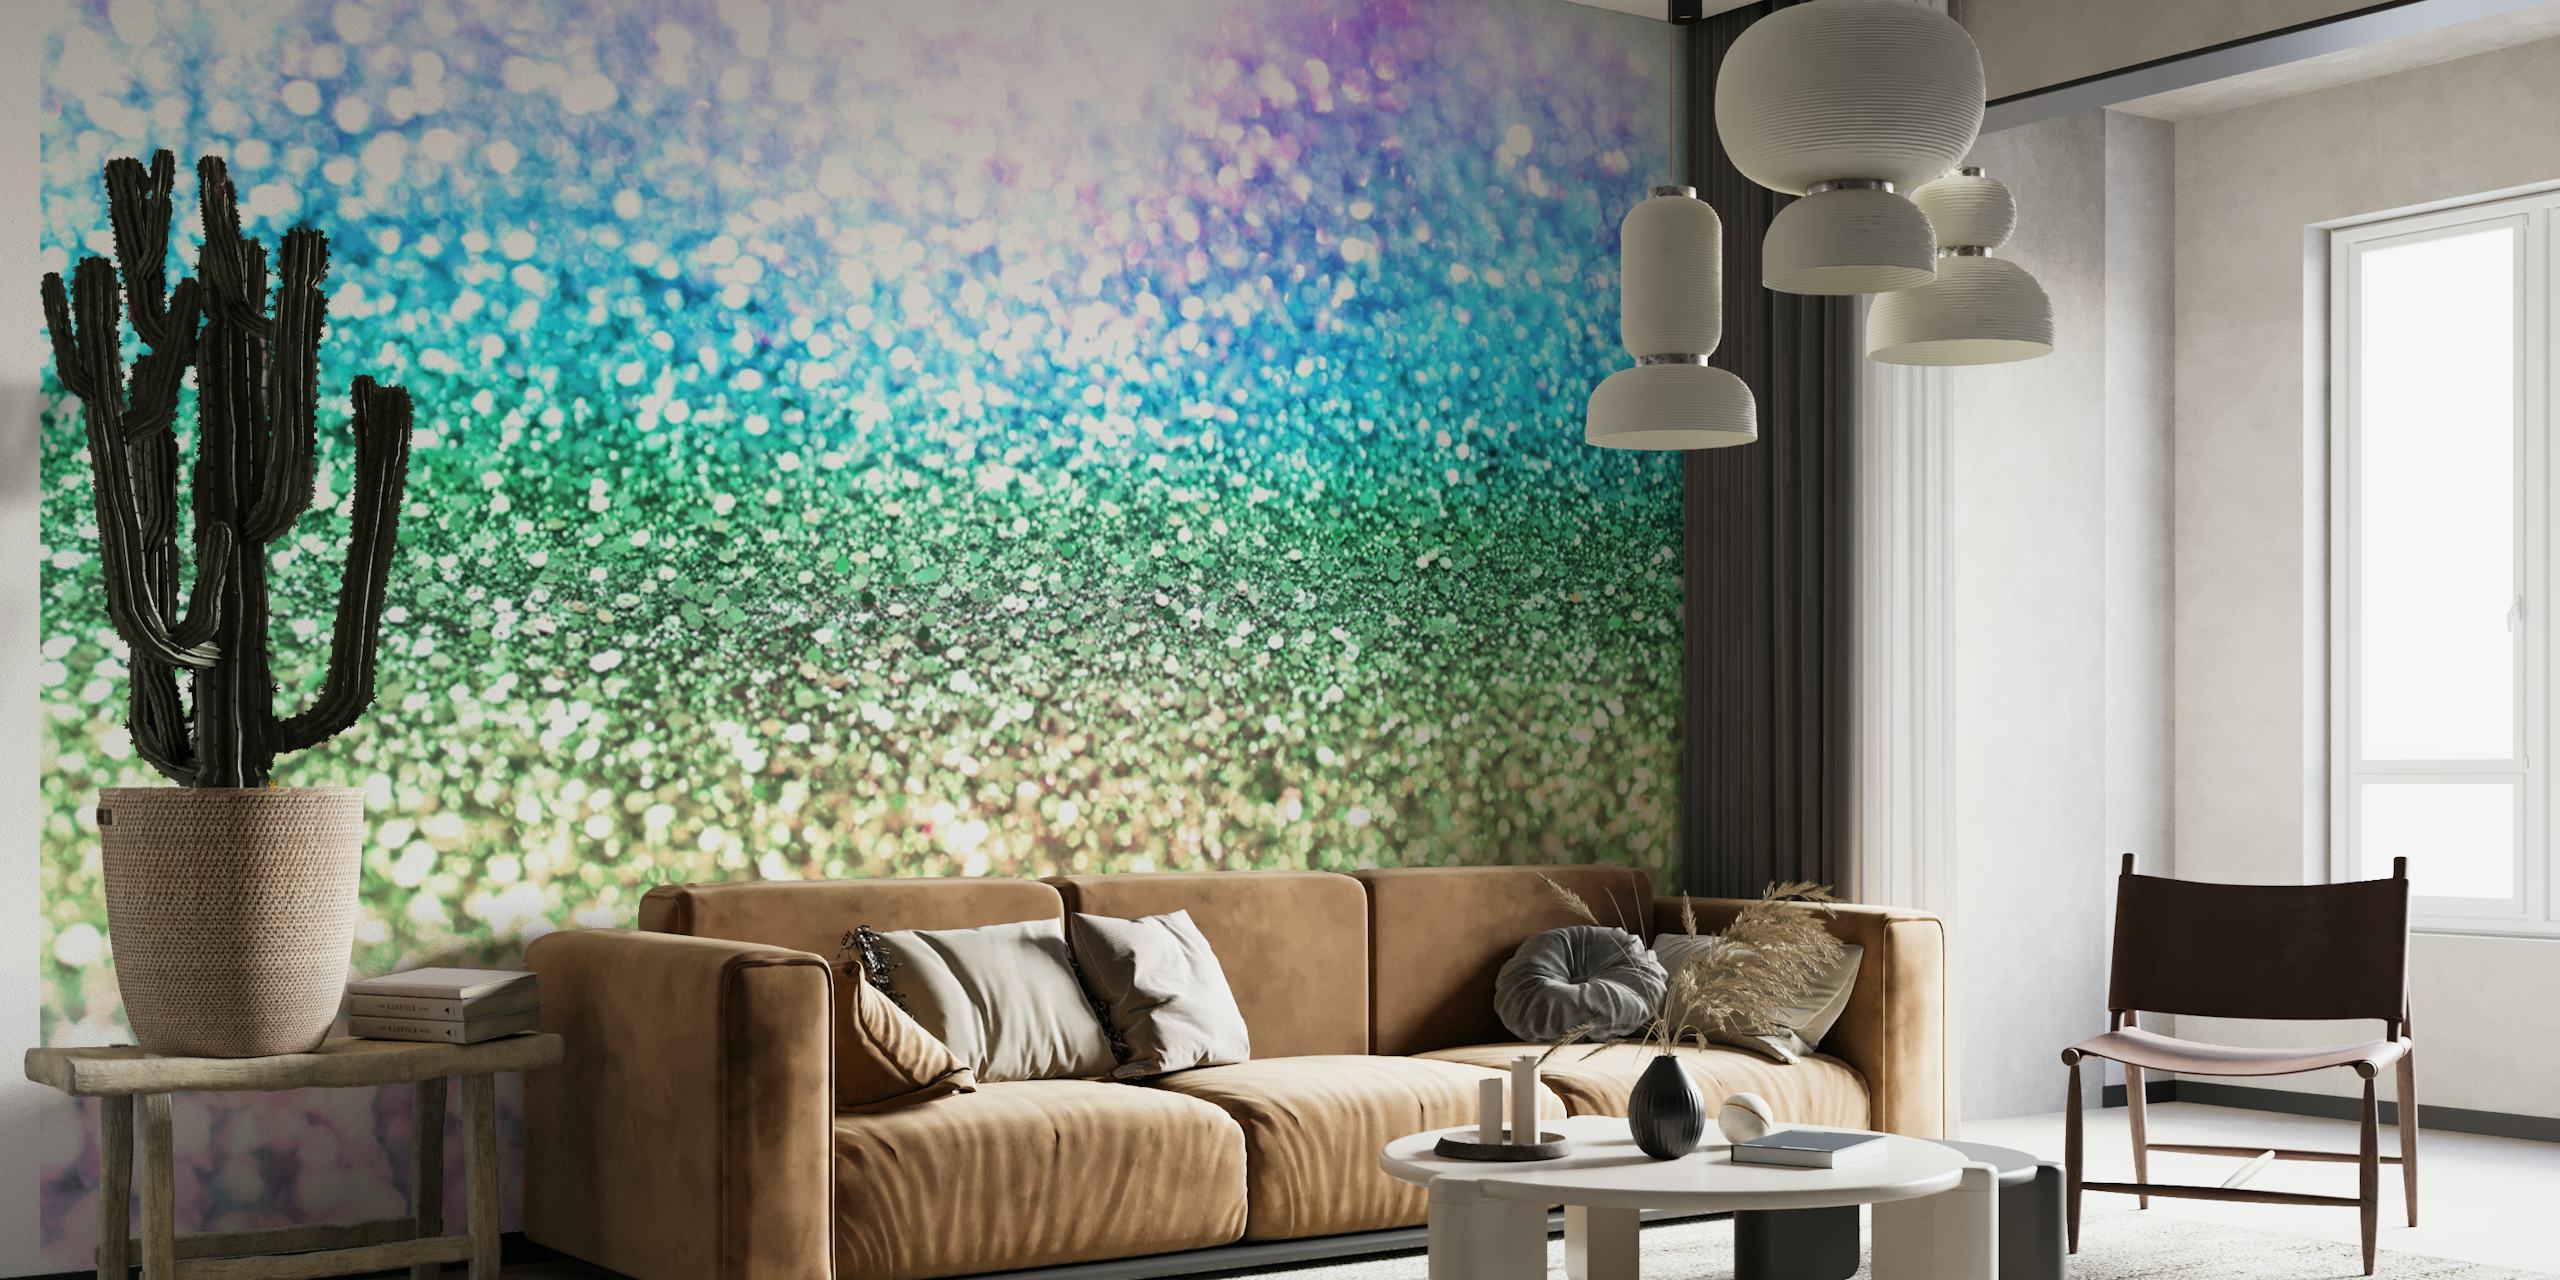 Pastel regnbueglimmer vægmaleri med en funklende tekstur, ideel til levende og finurlige indretningstemaer